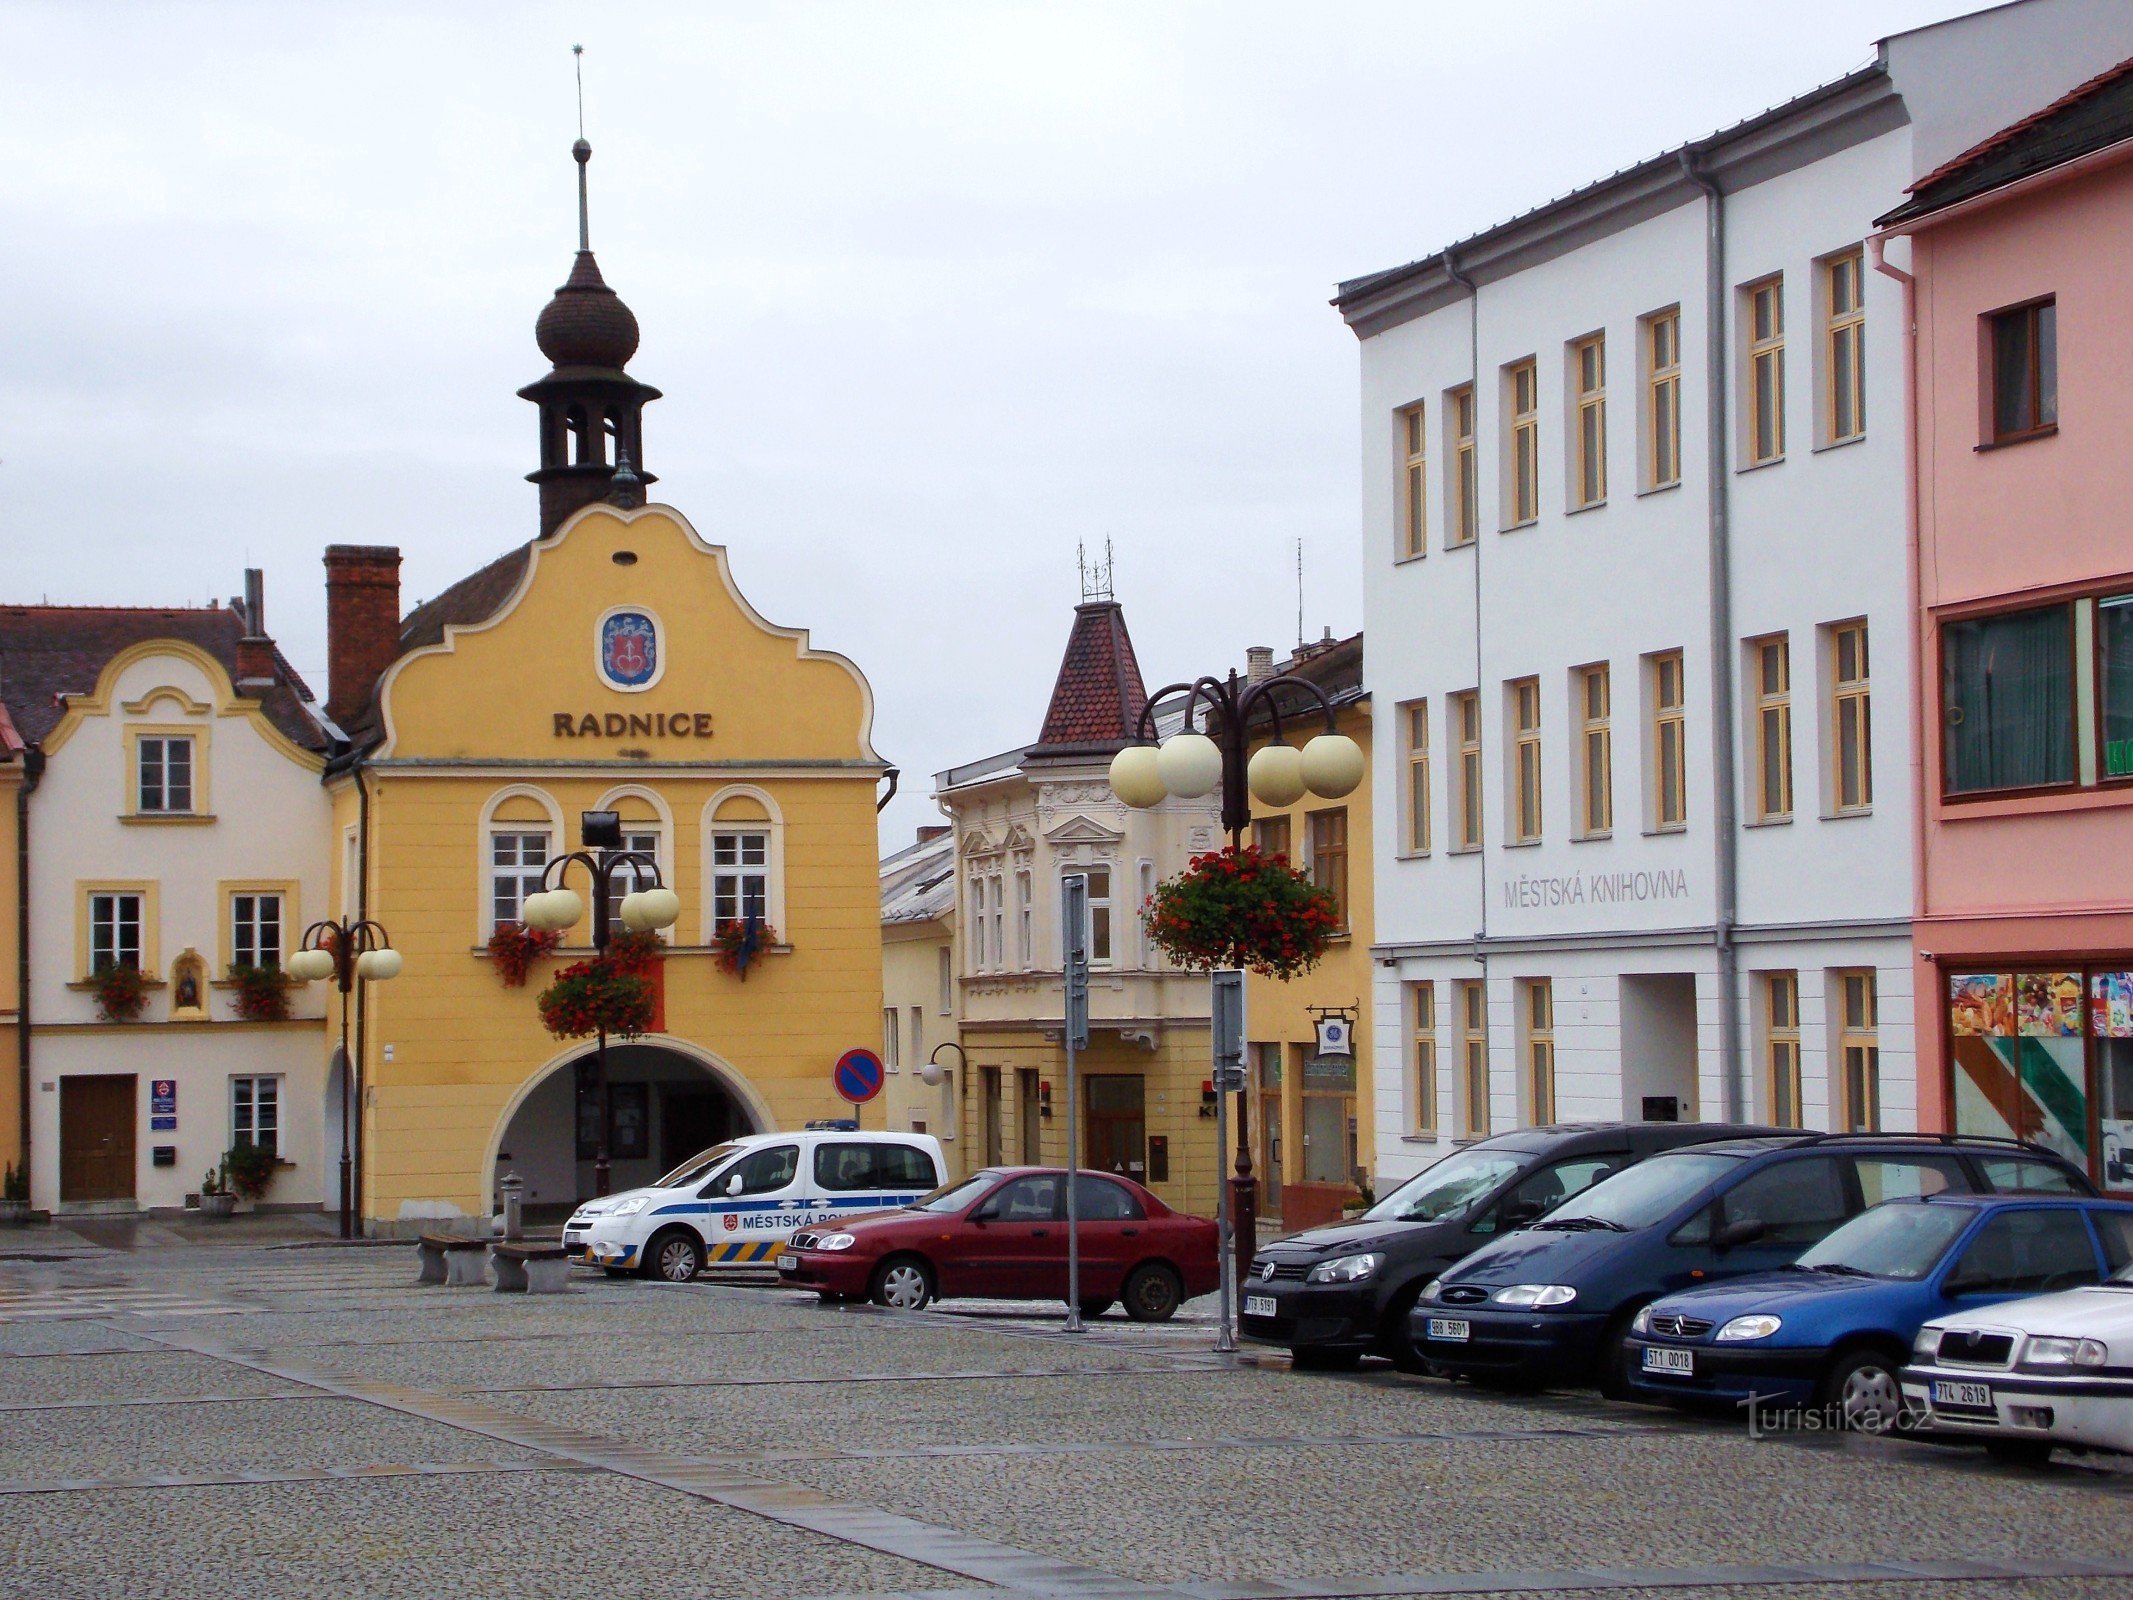 Renaissance stadhuis in Bílovec